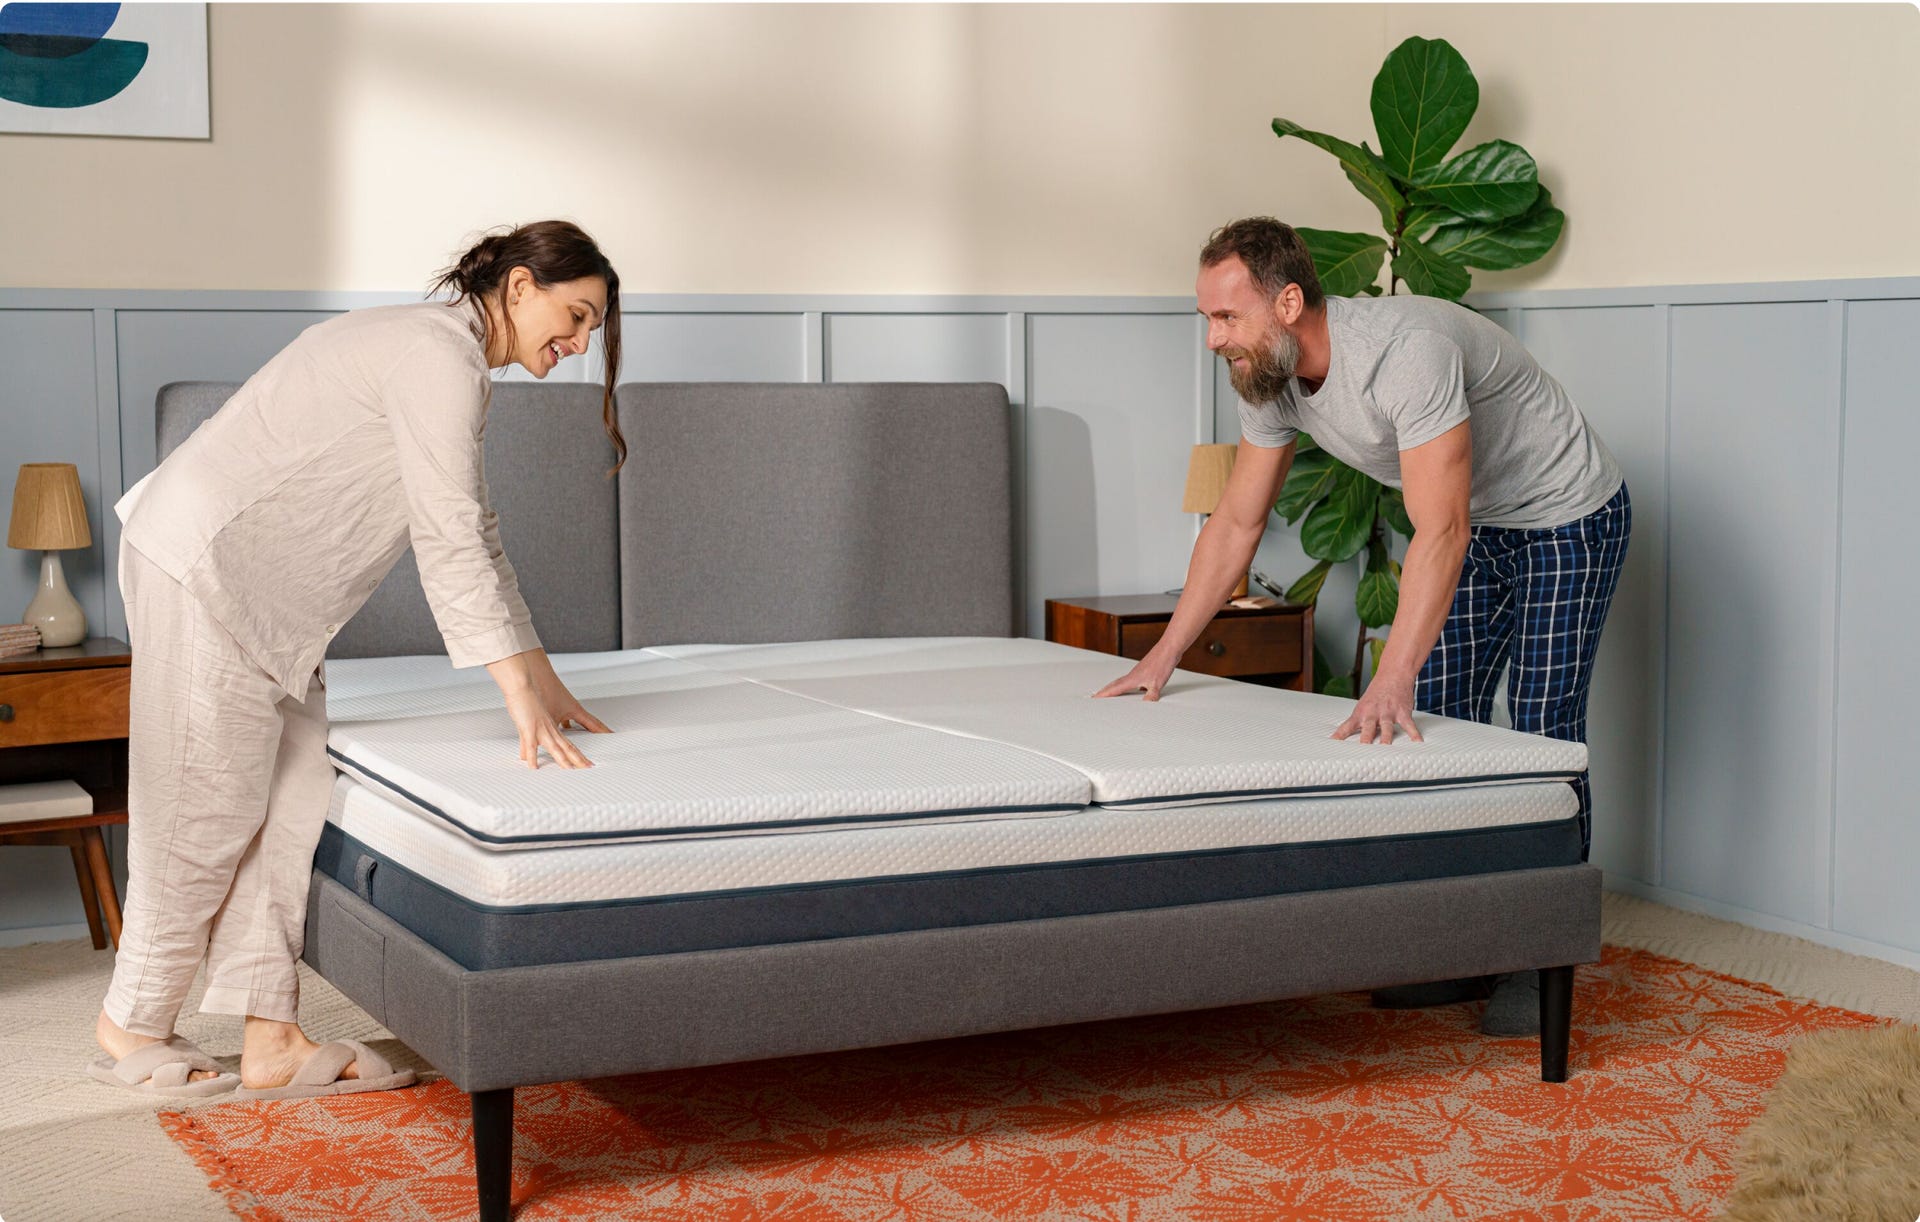 can a mattress topper extend life of mattress